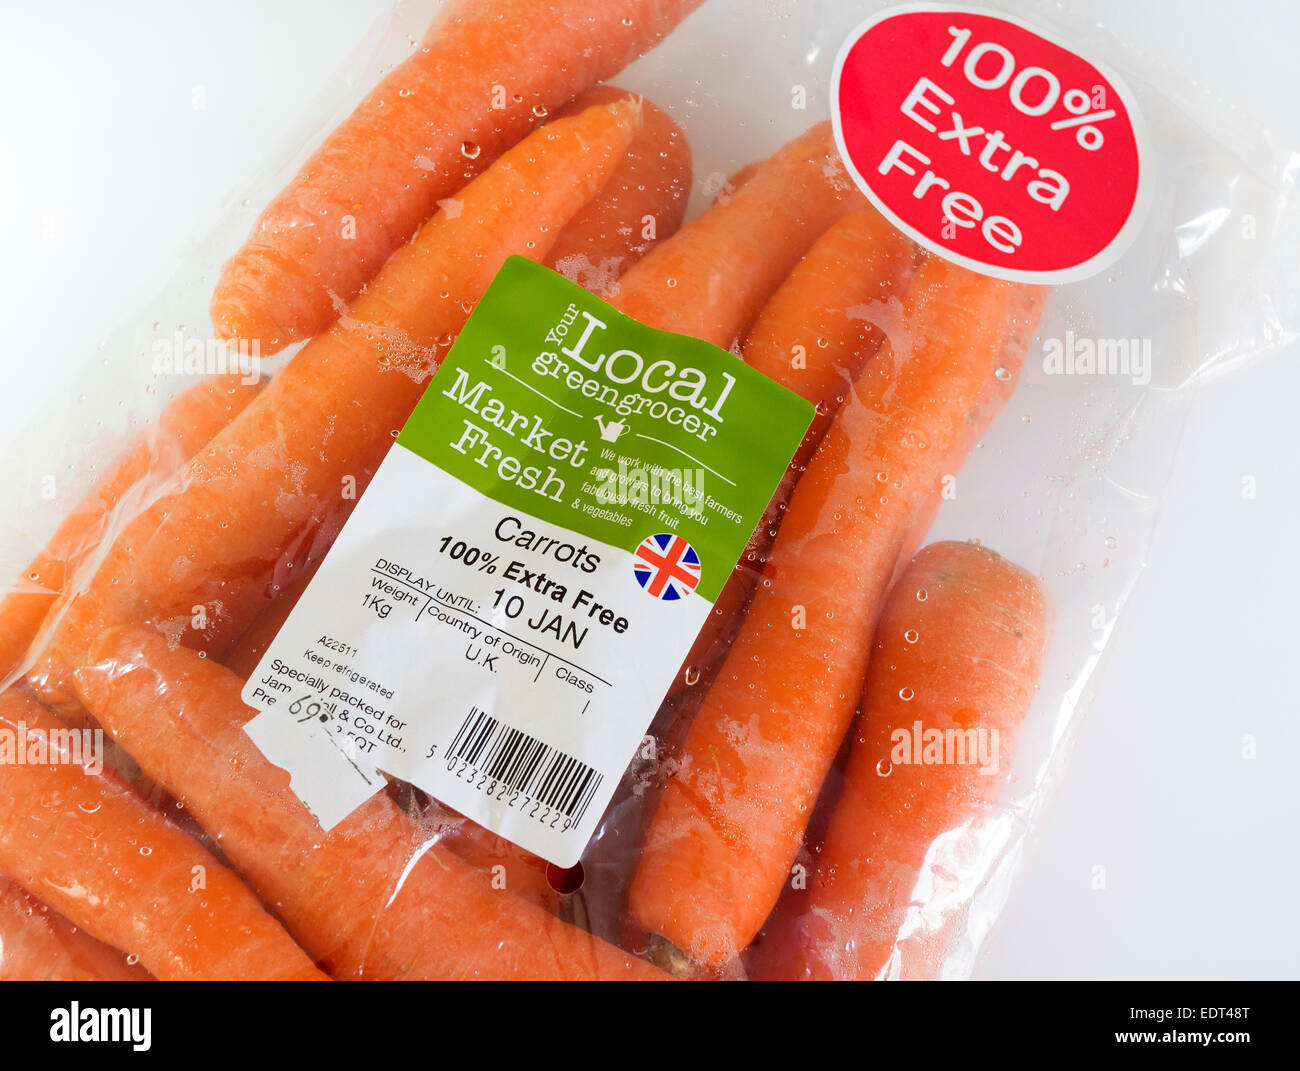 Esempio di danneggiamento ambientale e un uso non necessario di un sacchetto di plastica per vendere le carote da una grande catena di supermercati. Foto Stock